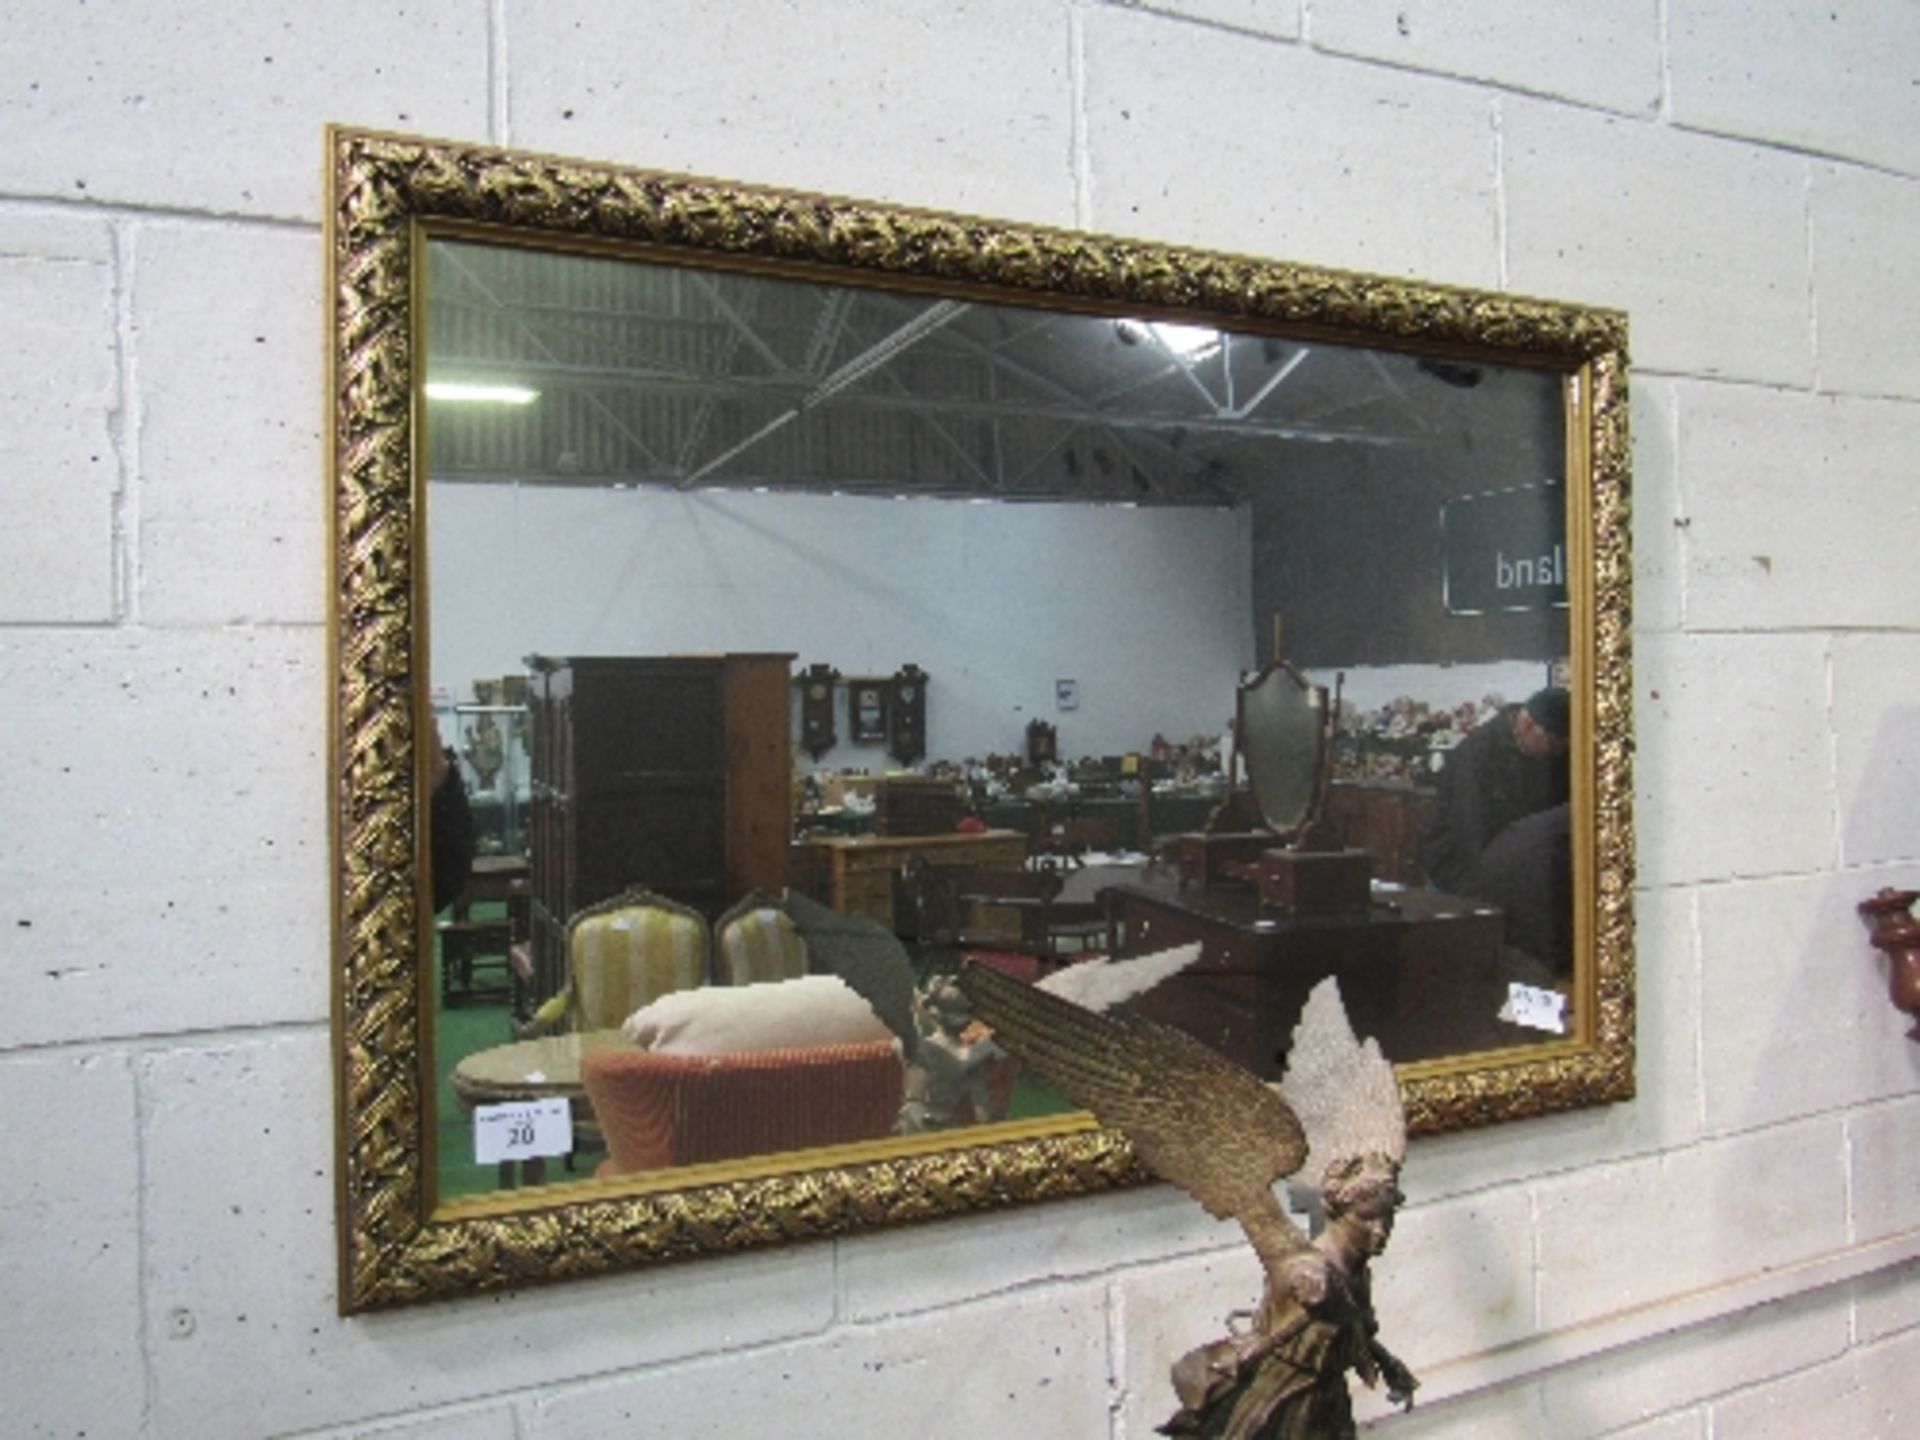 Gilt foliage framed wall mirror, 118cms x 78cms. Estimate £30-50.